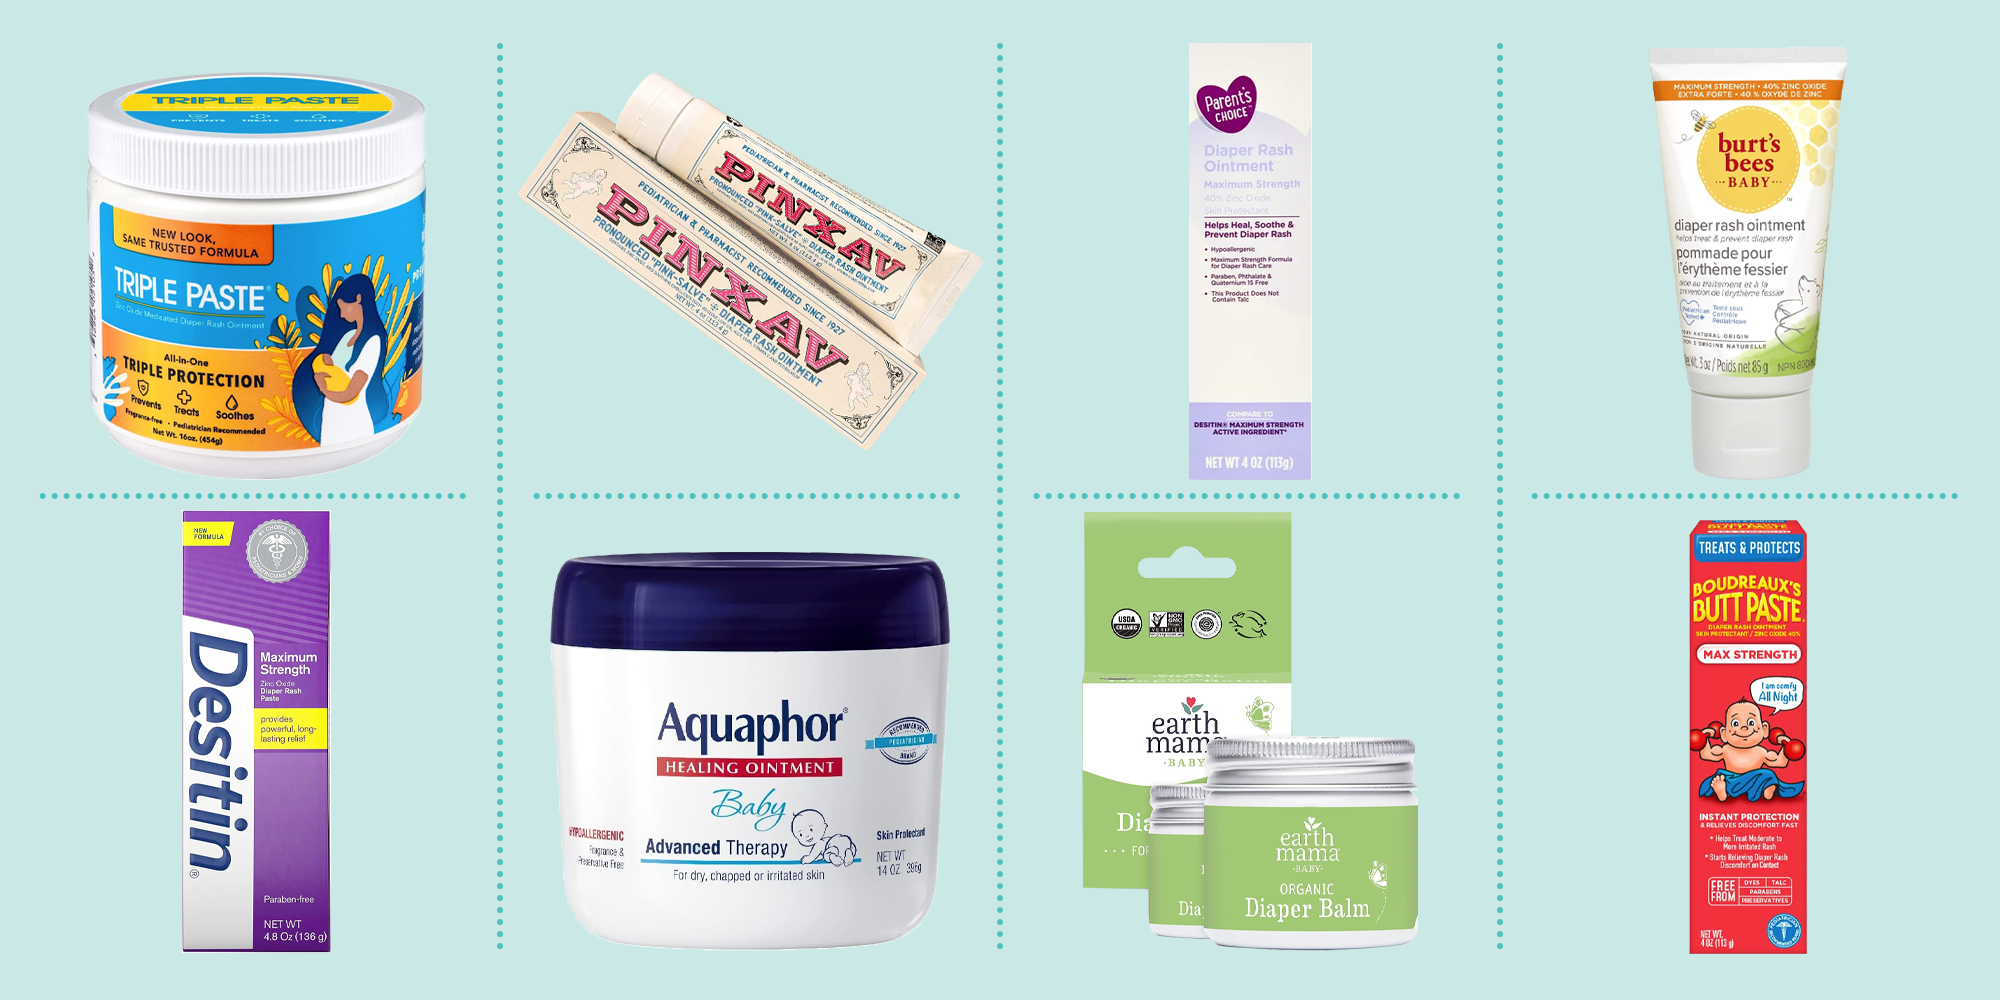 Antifungal creams for diaper rash